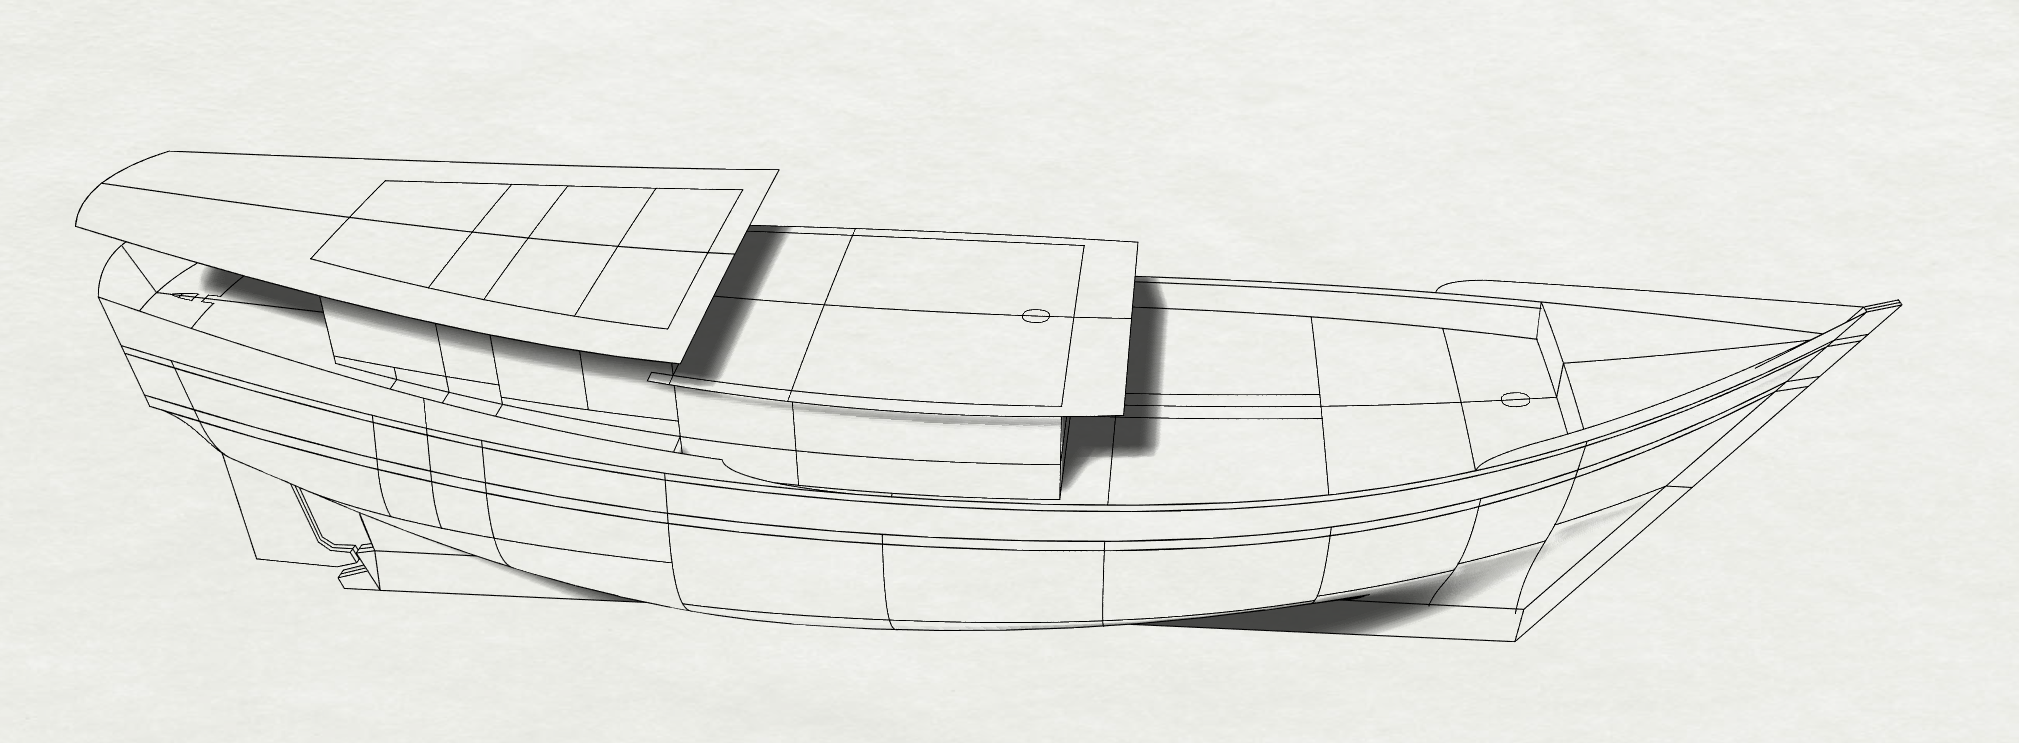 36m Lombok Privateer Schooner - Kasten Marine Design, Inc.